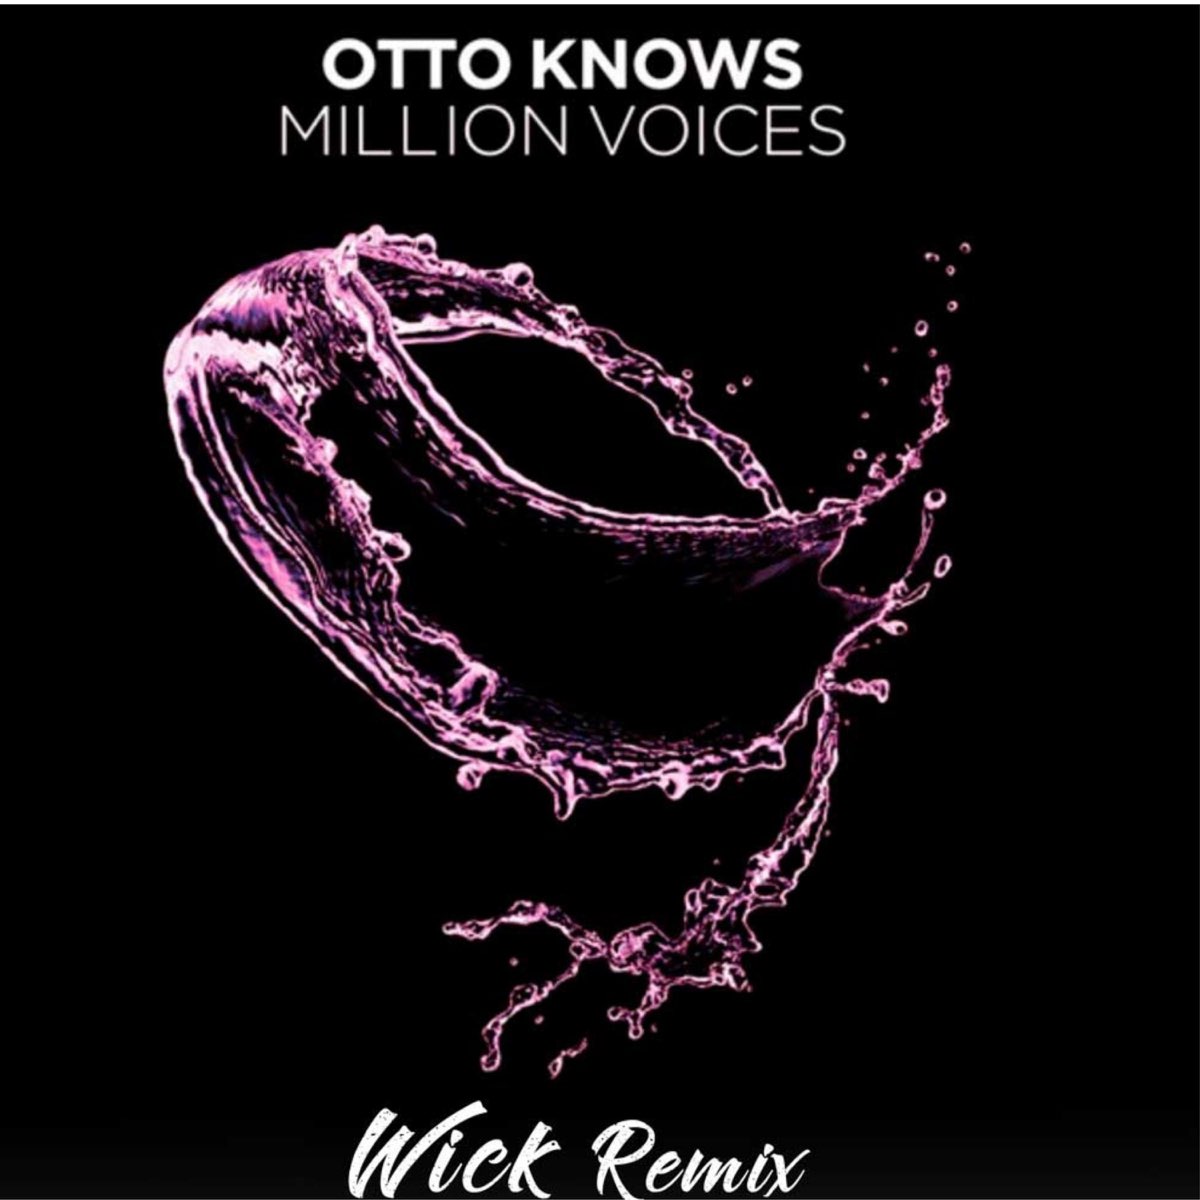 слушать, Million Voices - Remix (Wick Remix) - Single, Otto Knows, музыка, ...